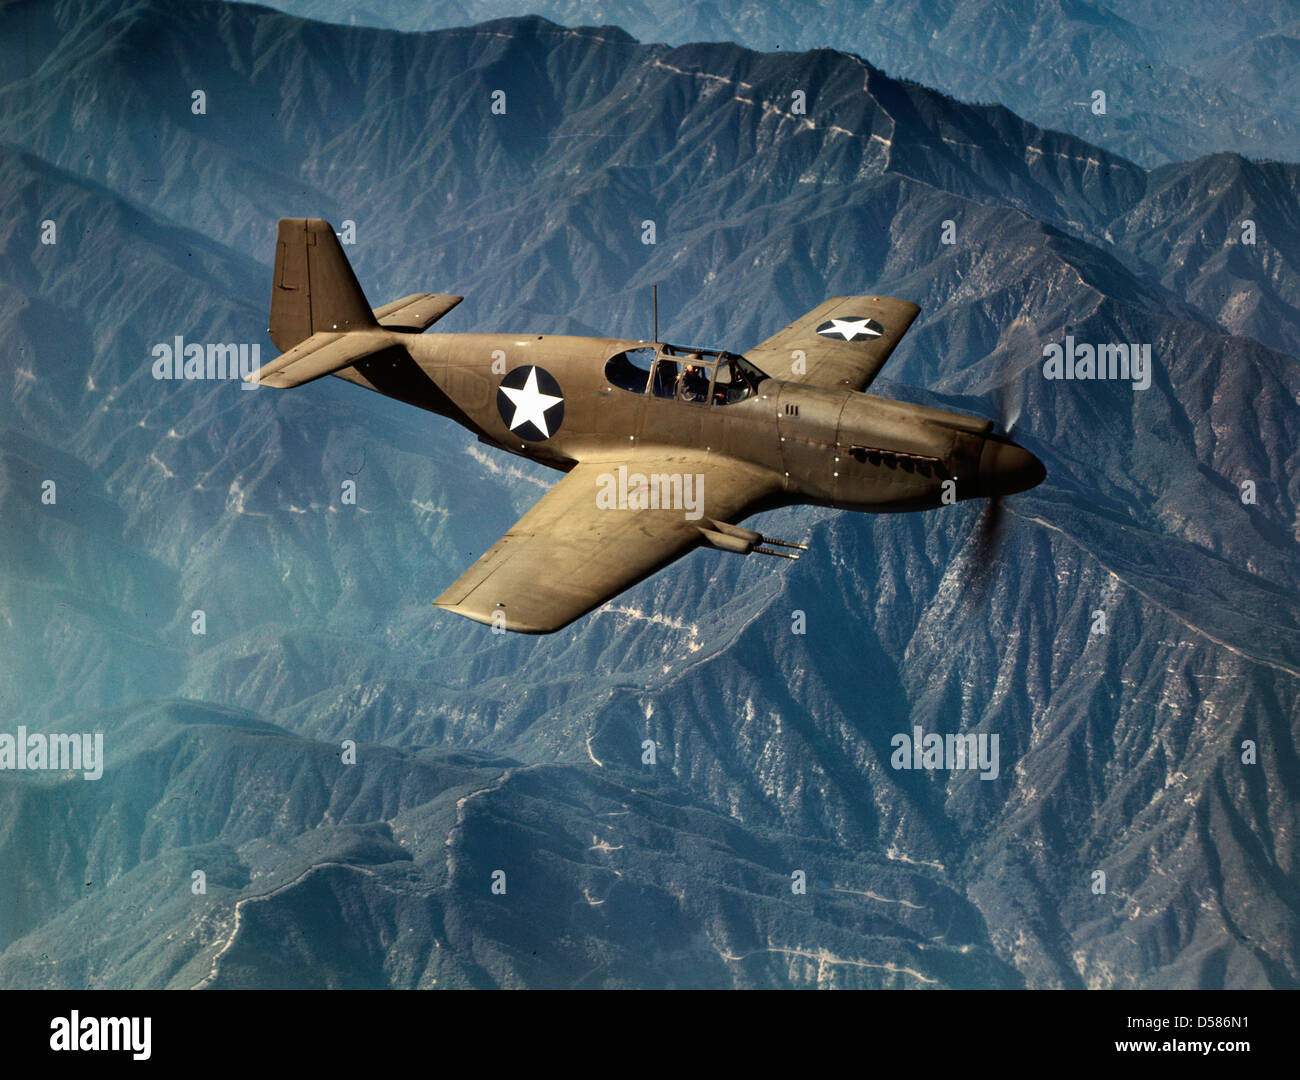 P-51 'Mustang' caza en vuelo, Inglewood, California el 'Mustang', construida por North American Aviation, Incorporated es el único americano-construido fighter utilizada por la Real Fuerza Aérea de Gran Bretaña, circa 1942 Foto de stock